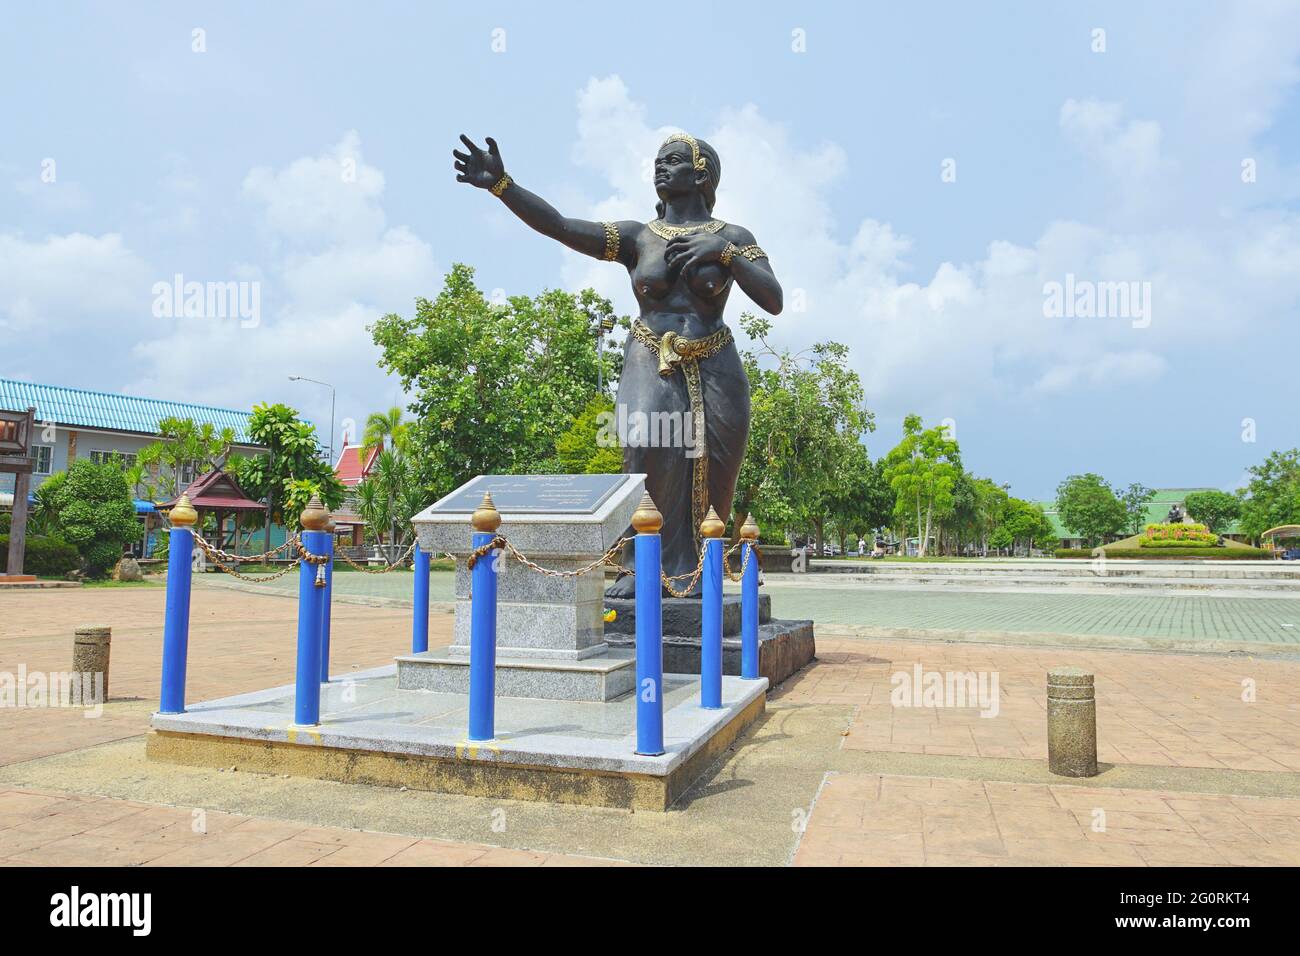 Rayong, Thailand - 13. April 2021: Statue von Nang Phisuea Samudr in der Provinz Rayong, Thailand. Dies ist eine Hauptfigur des thailändischen Dichters Phra Aphai Mani w Stockfoto